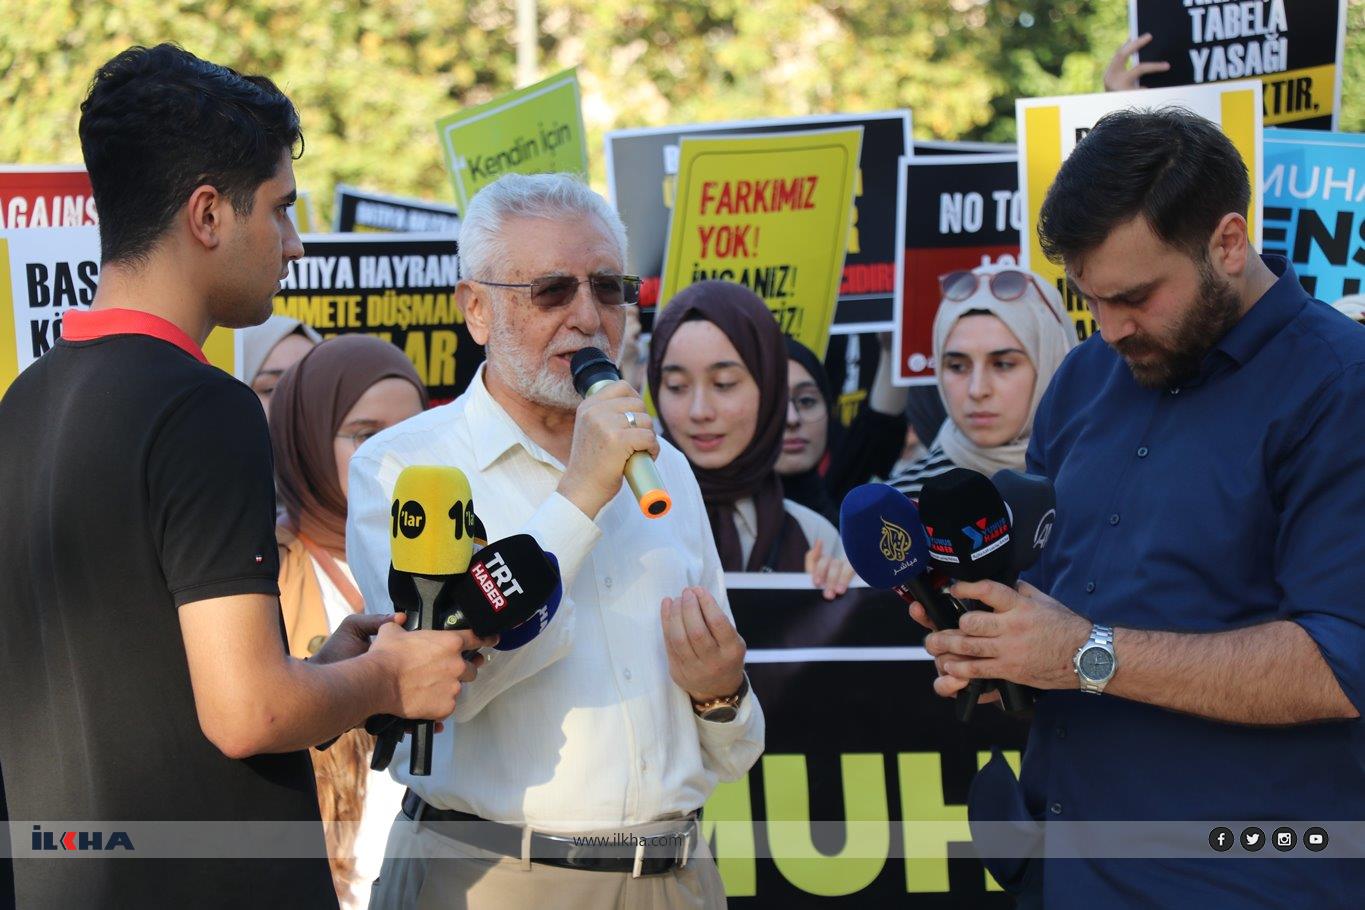 İstanbul'da ırkçılığa karşı kardeşliğin sesi yükseltildi